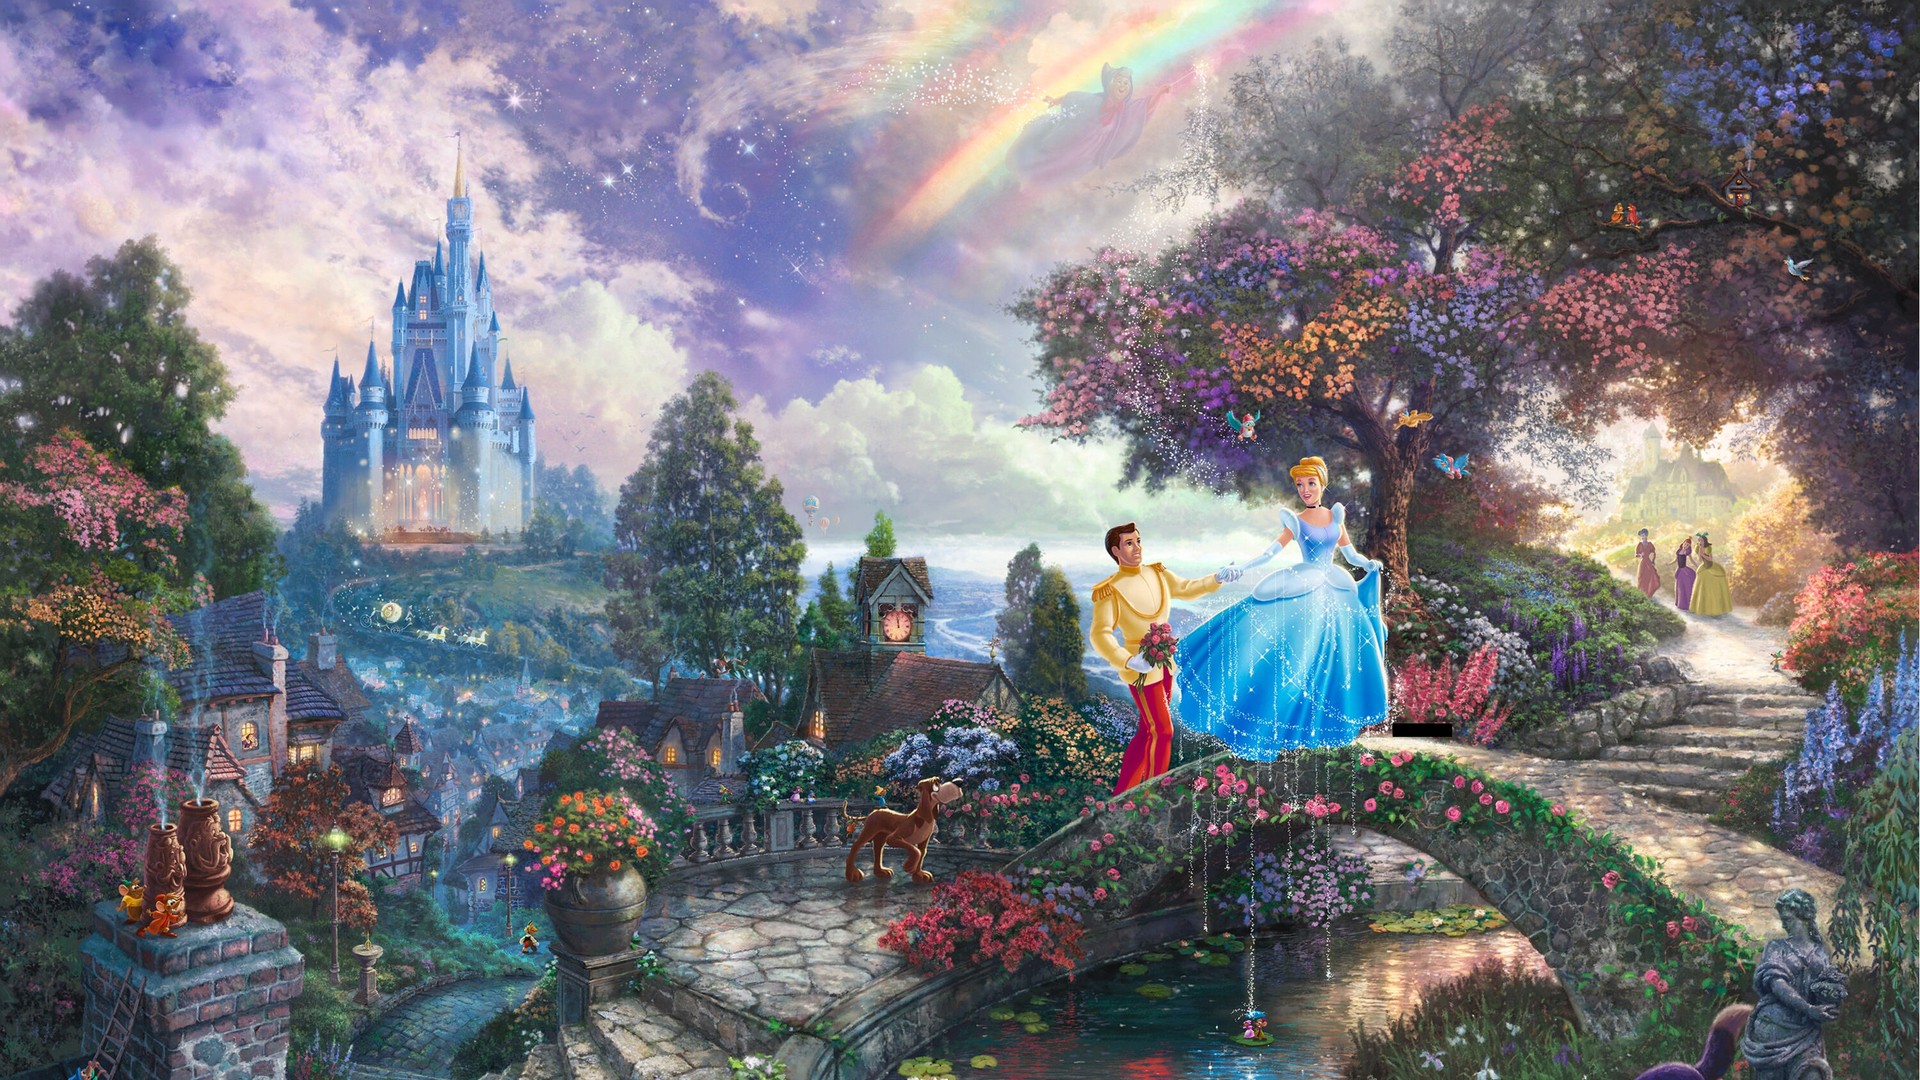 Cinderella Disney Castle Wallpaper